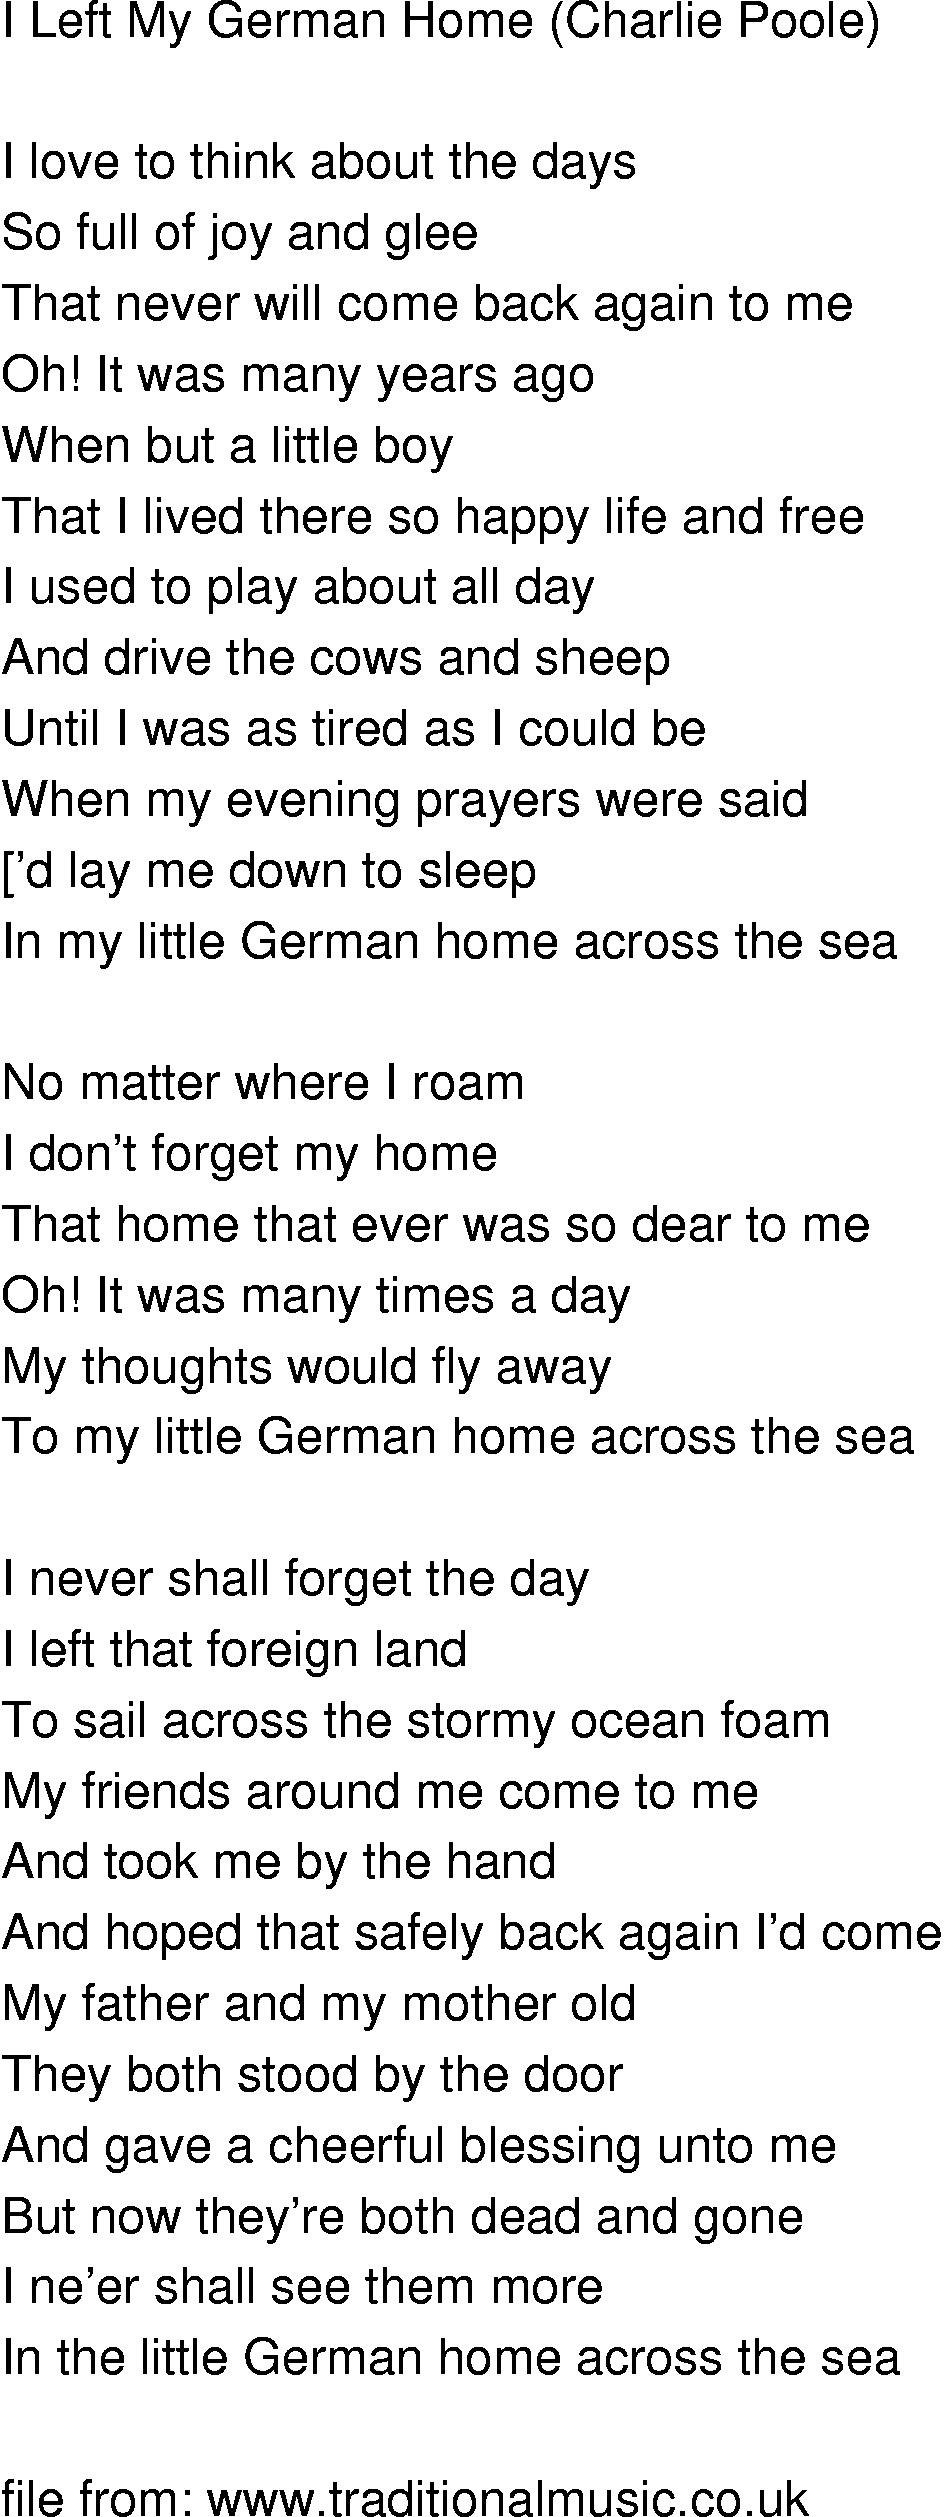 German Song